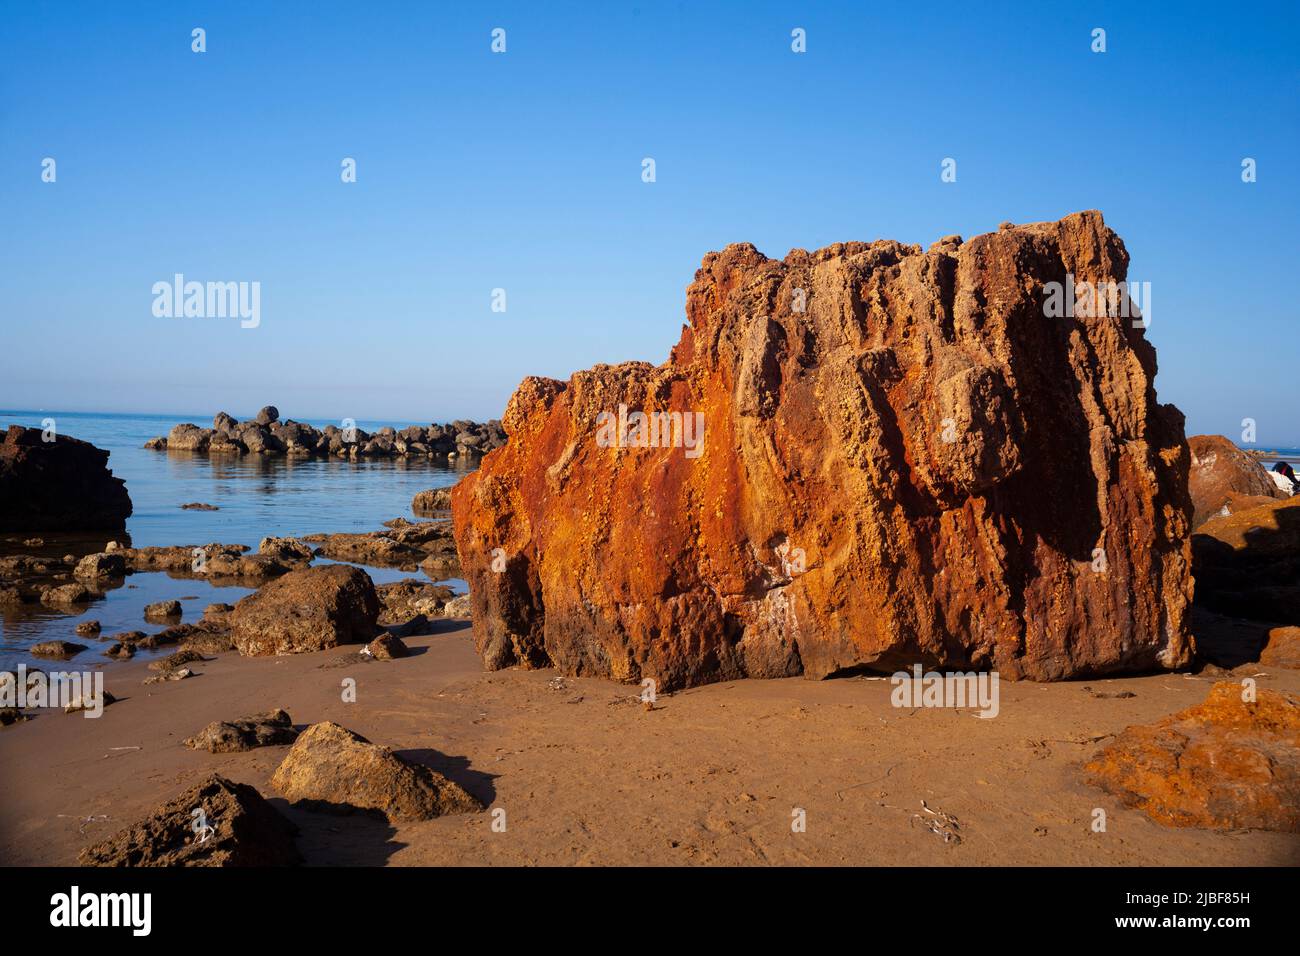 Gran roca en la playa de Capo Rosselló en Realmonte, Agrigento. Sicilia Foto de stock